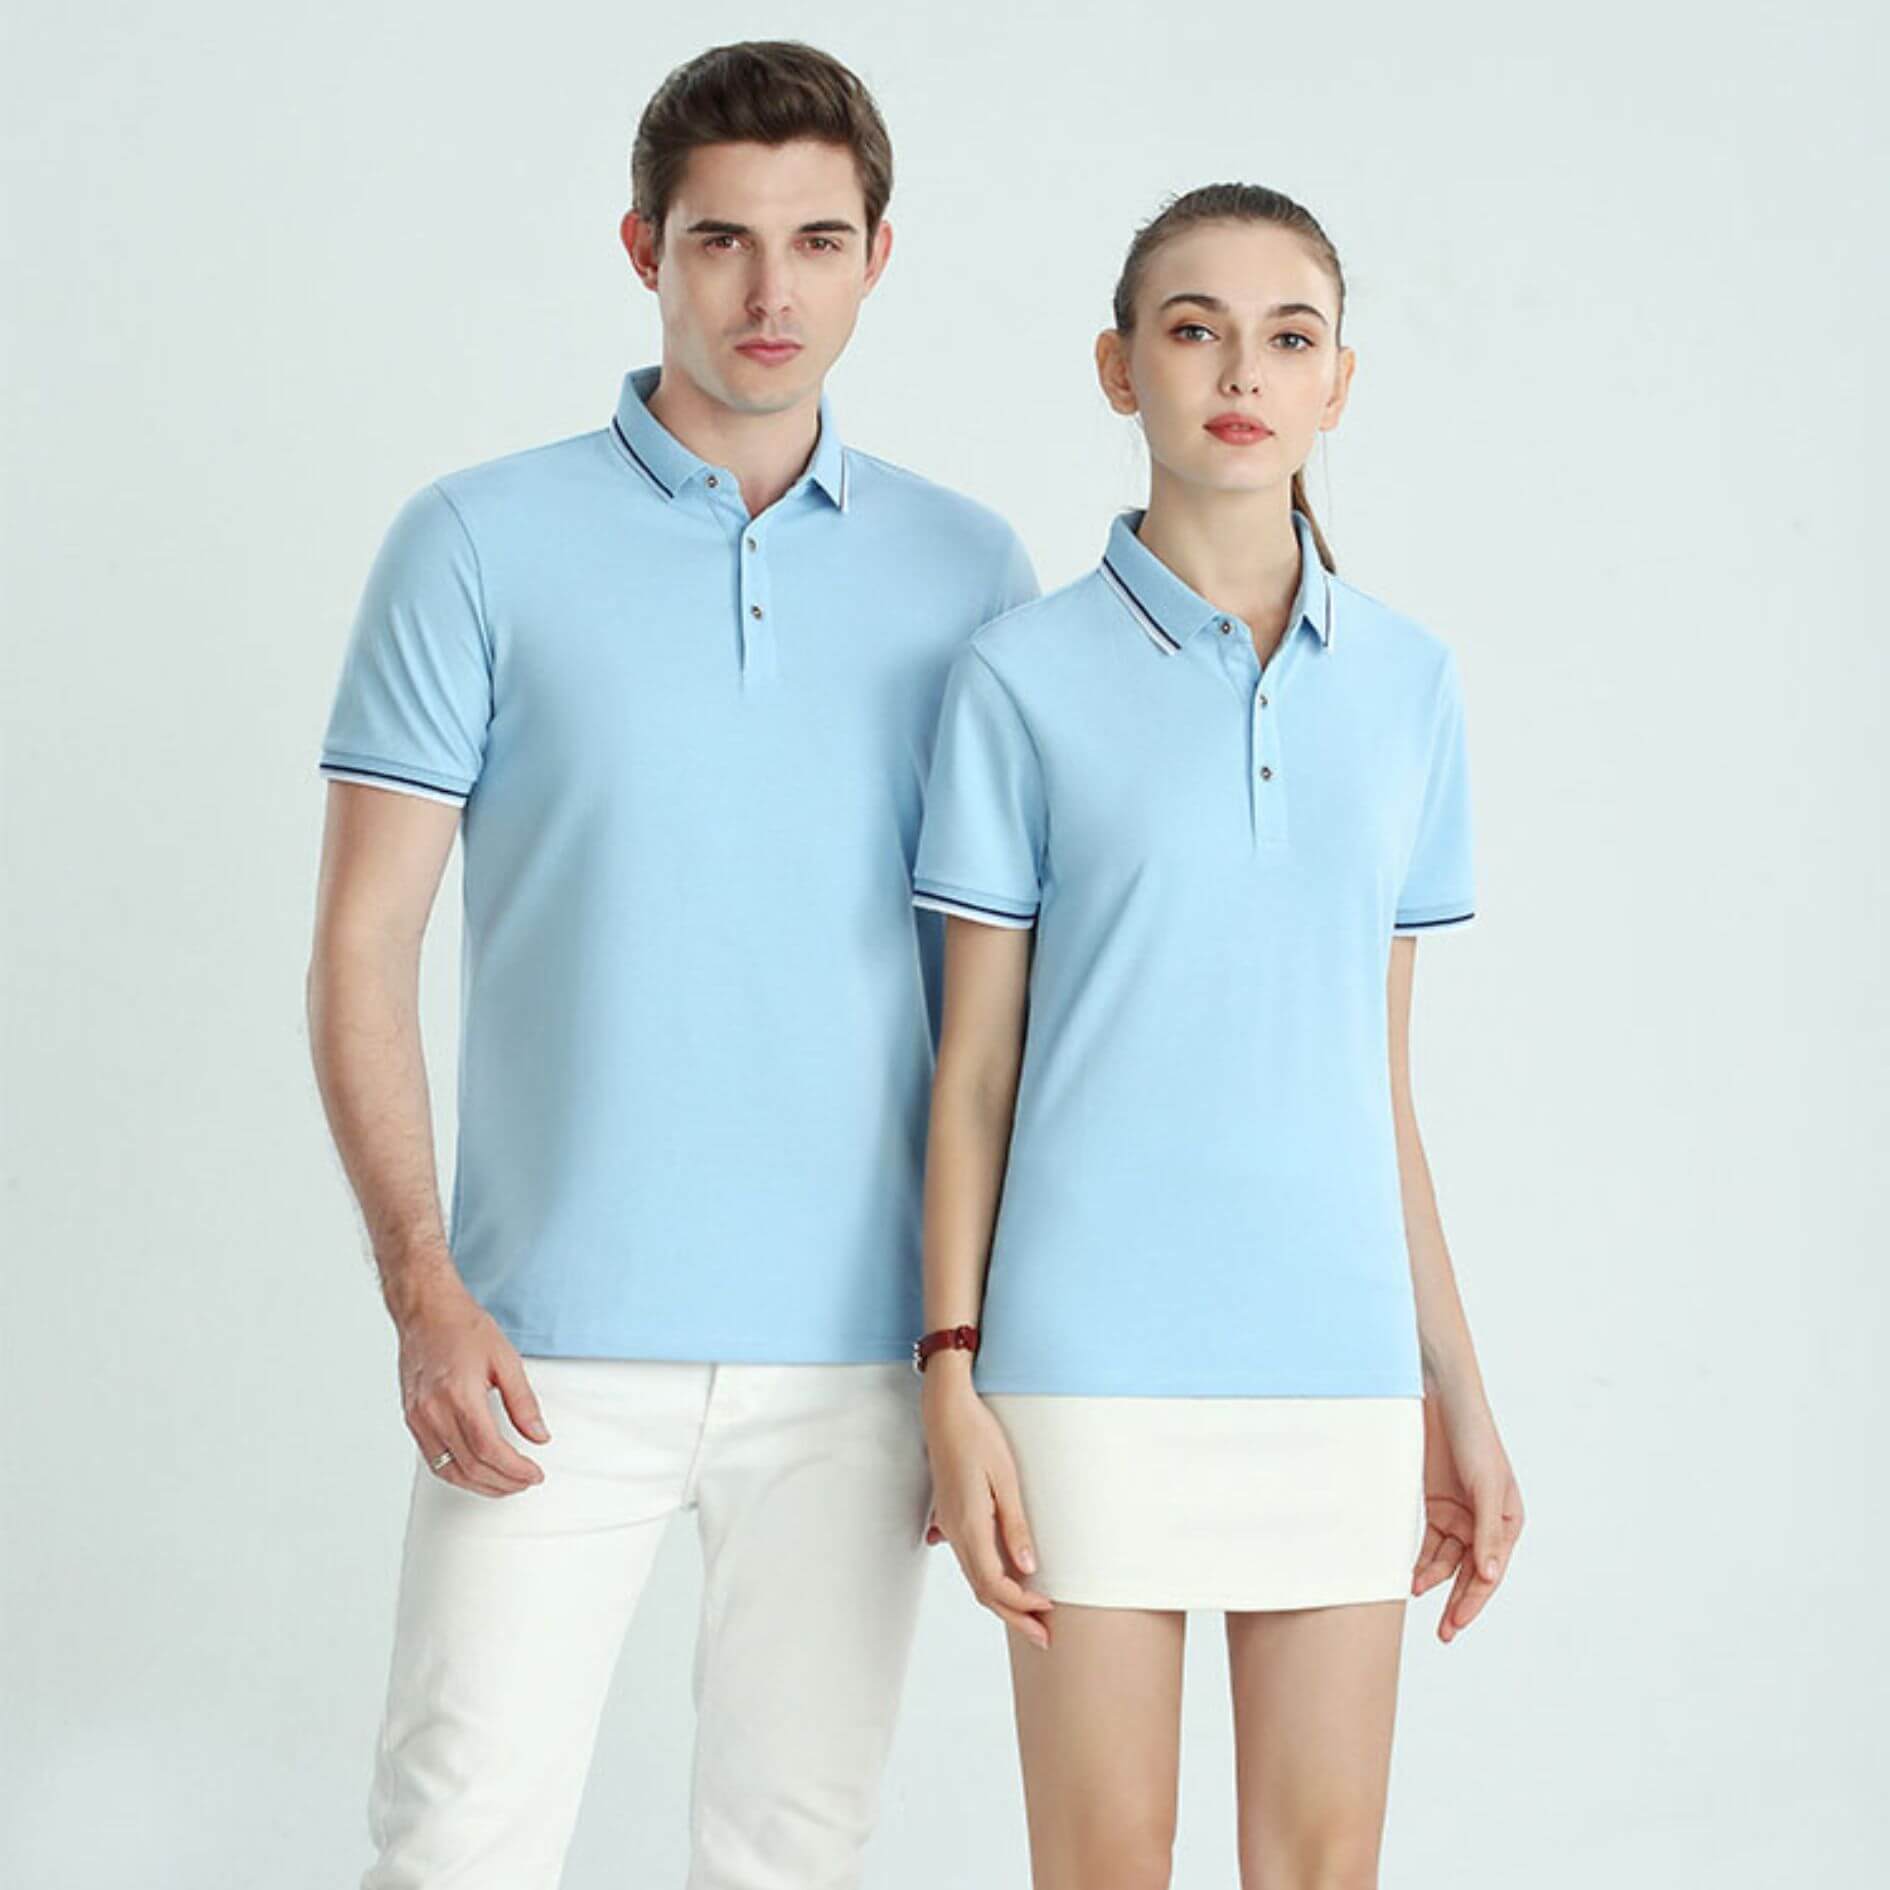 Polo恤, Polo恤衫, Polo Shirt香港 -ref01a